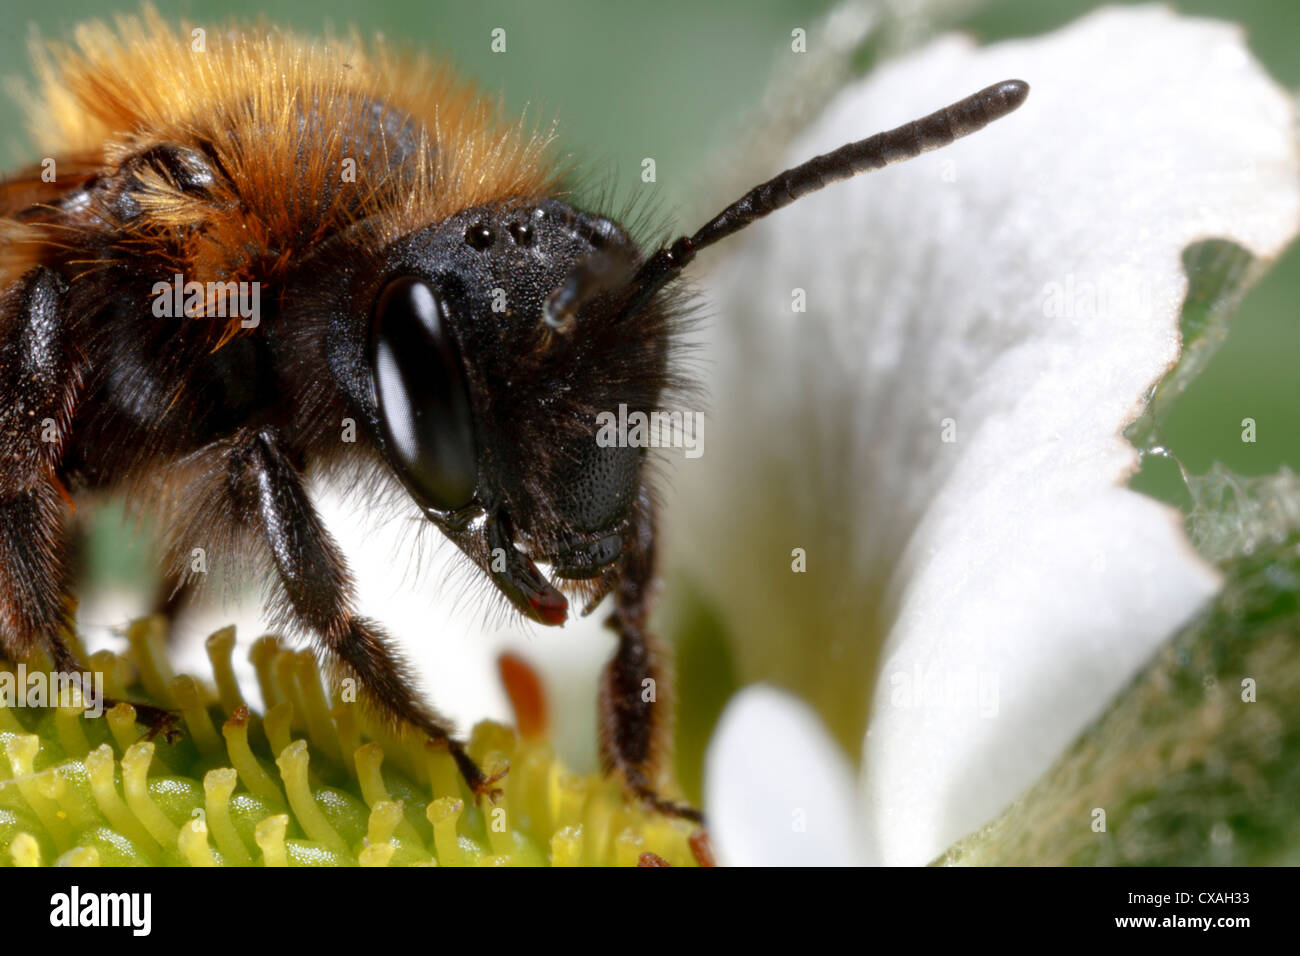 Weibliche Bergbau Biene Andrena bicolor Fütterung auf eine kultivierte Erdbeere Blume. Powys, Wales. April Stockfoto